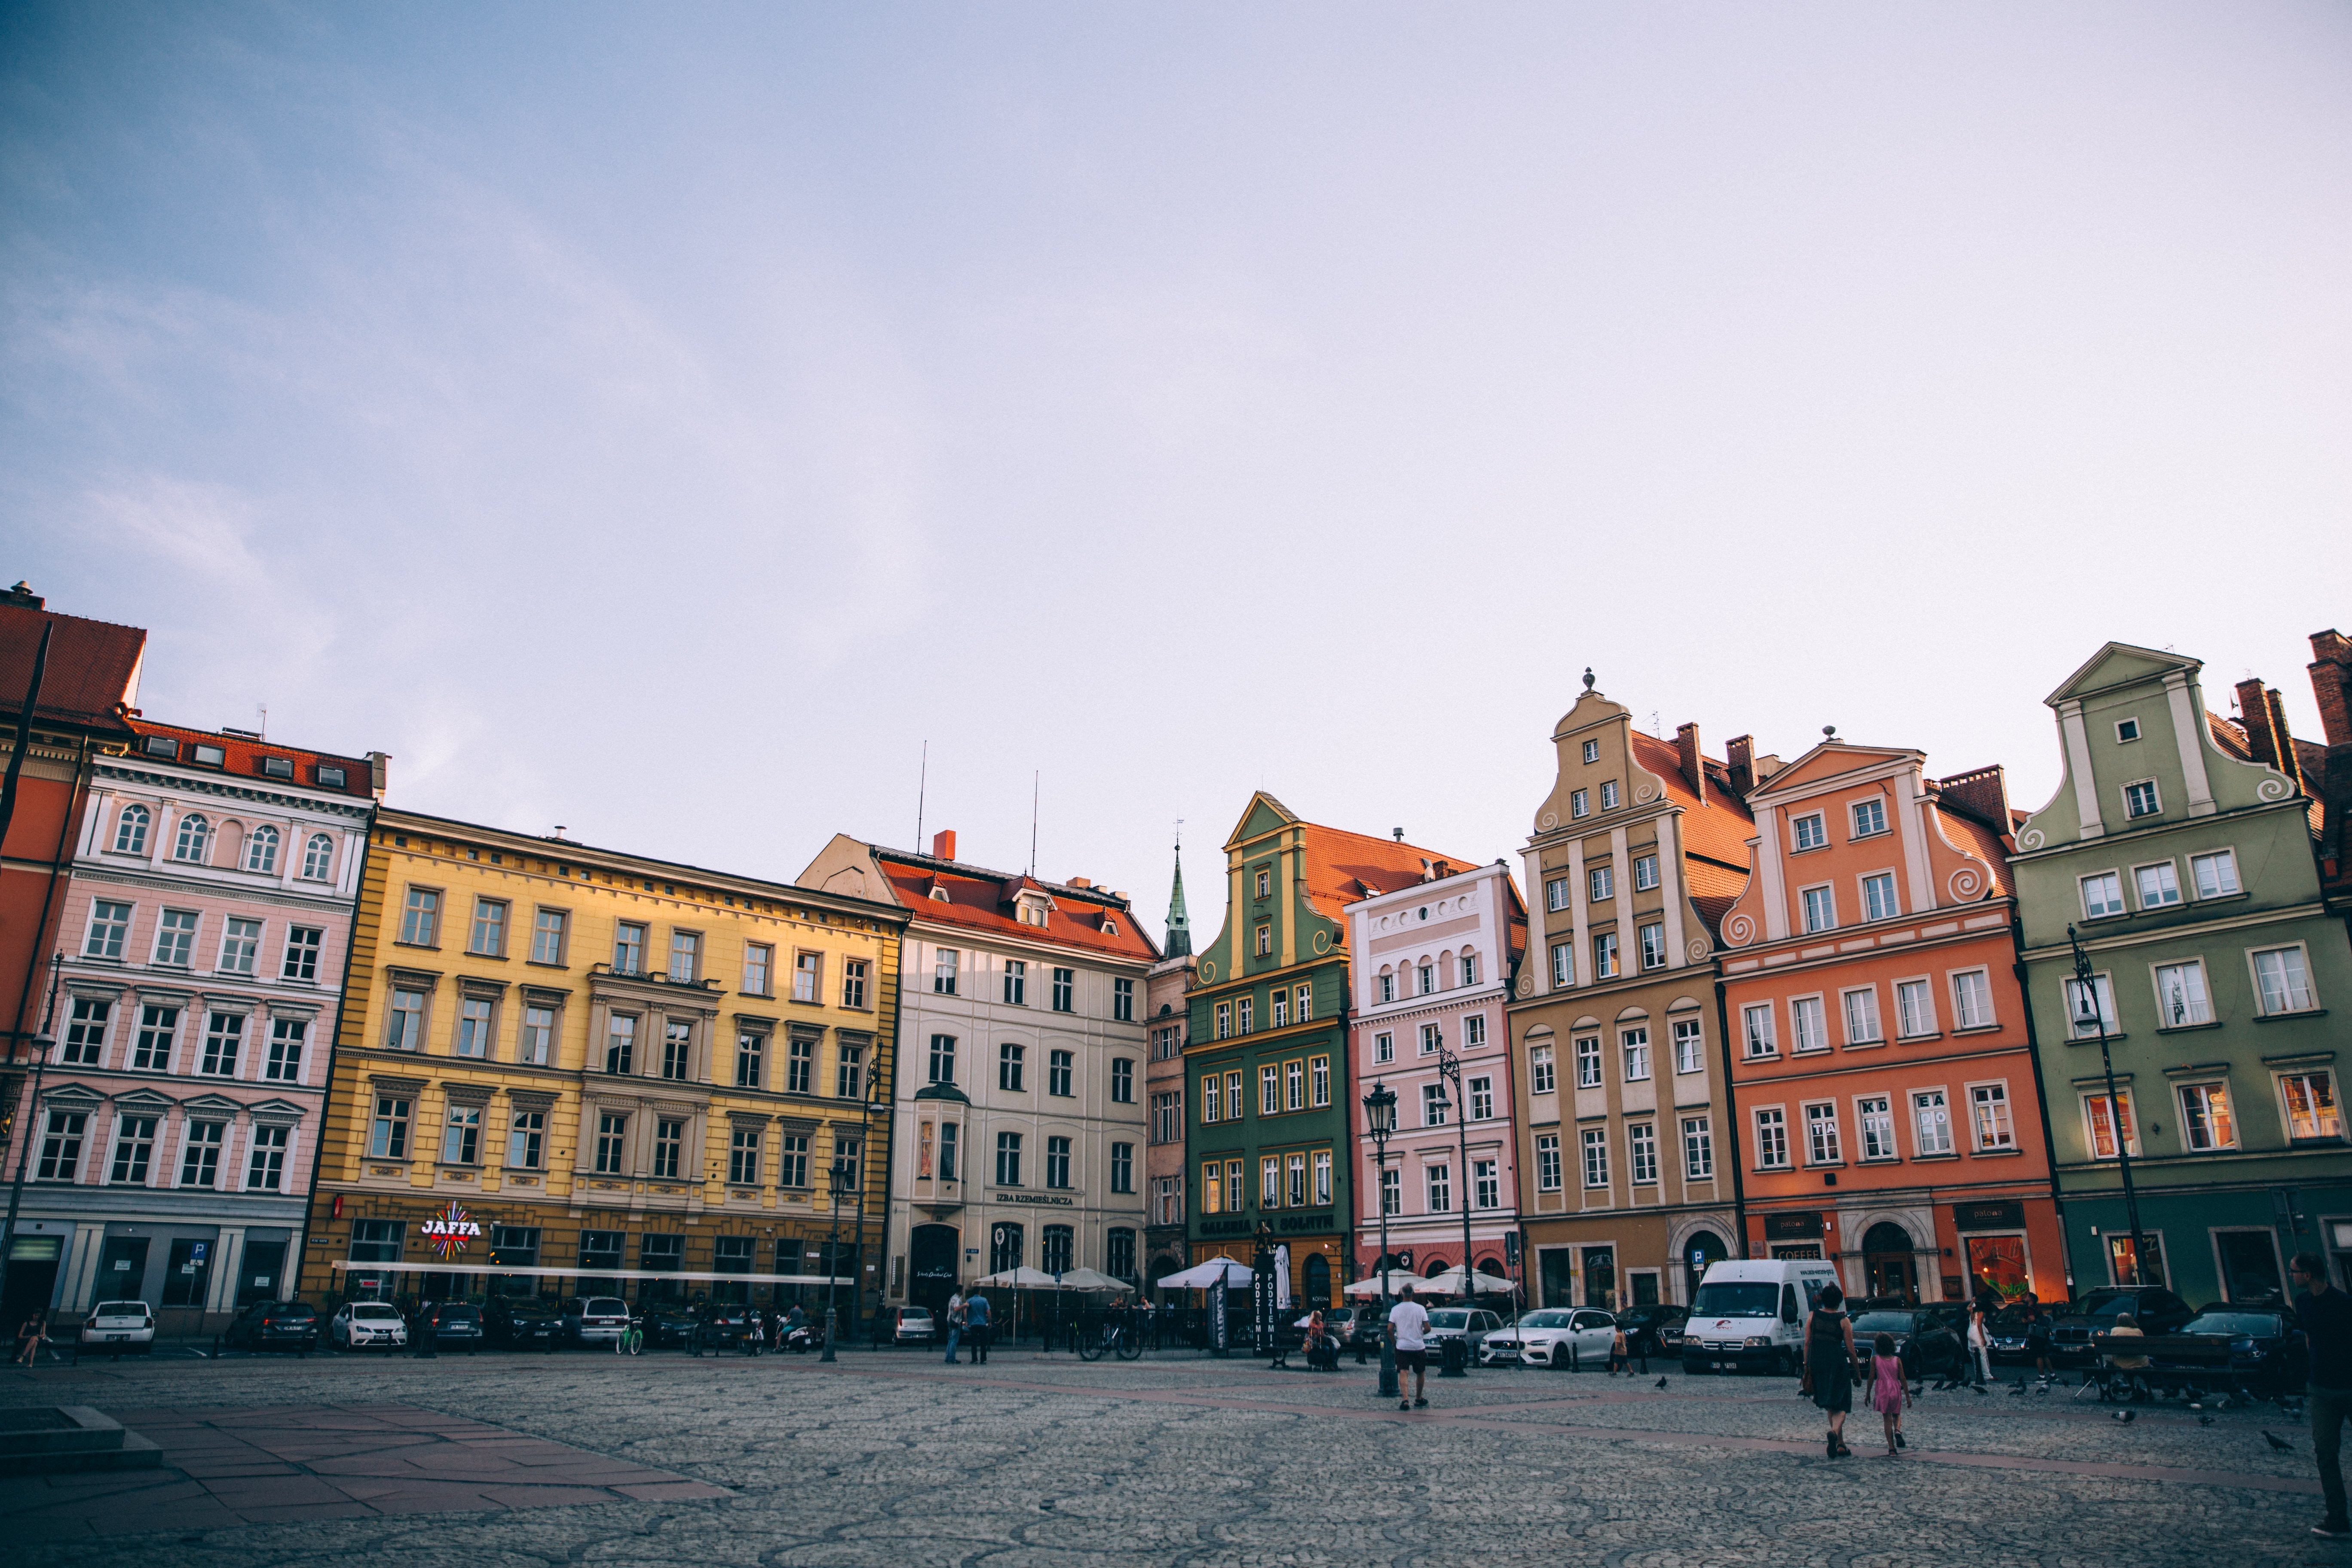 Tramonto su una piazza cittadina europea fiancheggiata da edifici colorati Foto 